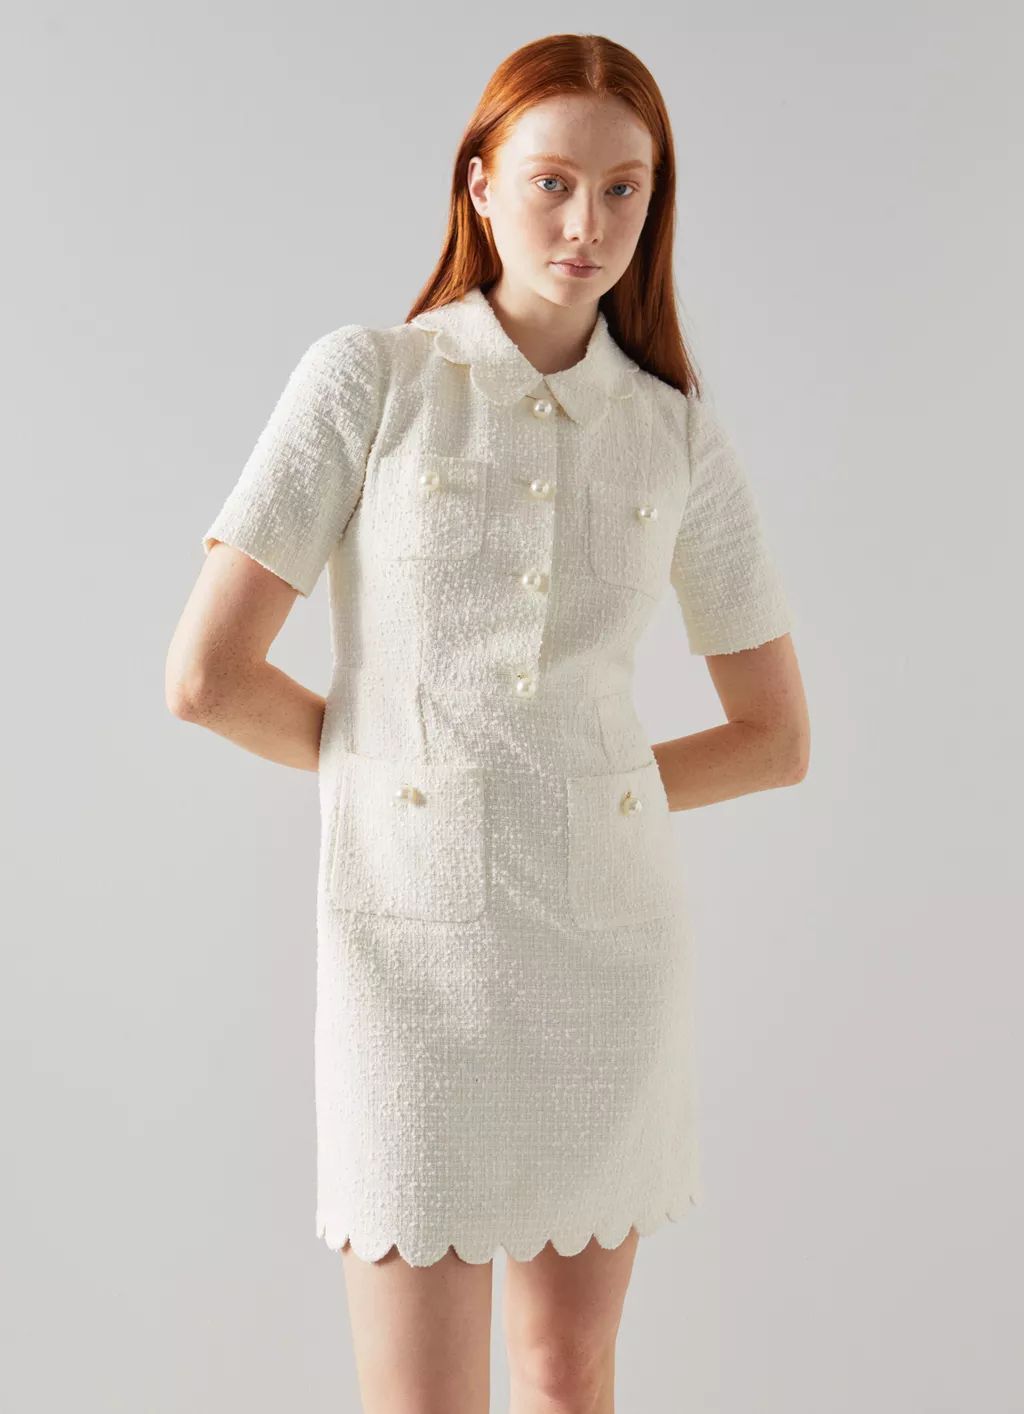 Venetia Cream Tweed Scallop Edge Dress | L.K. Bennett (UK)